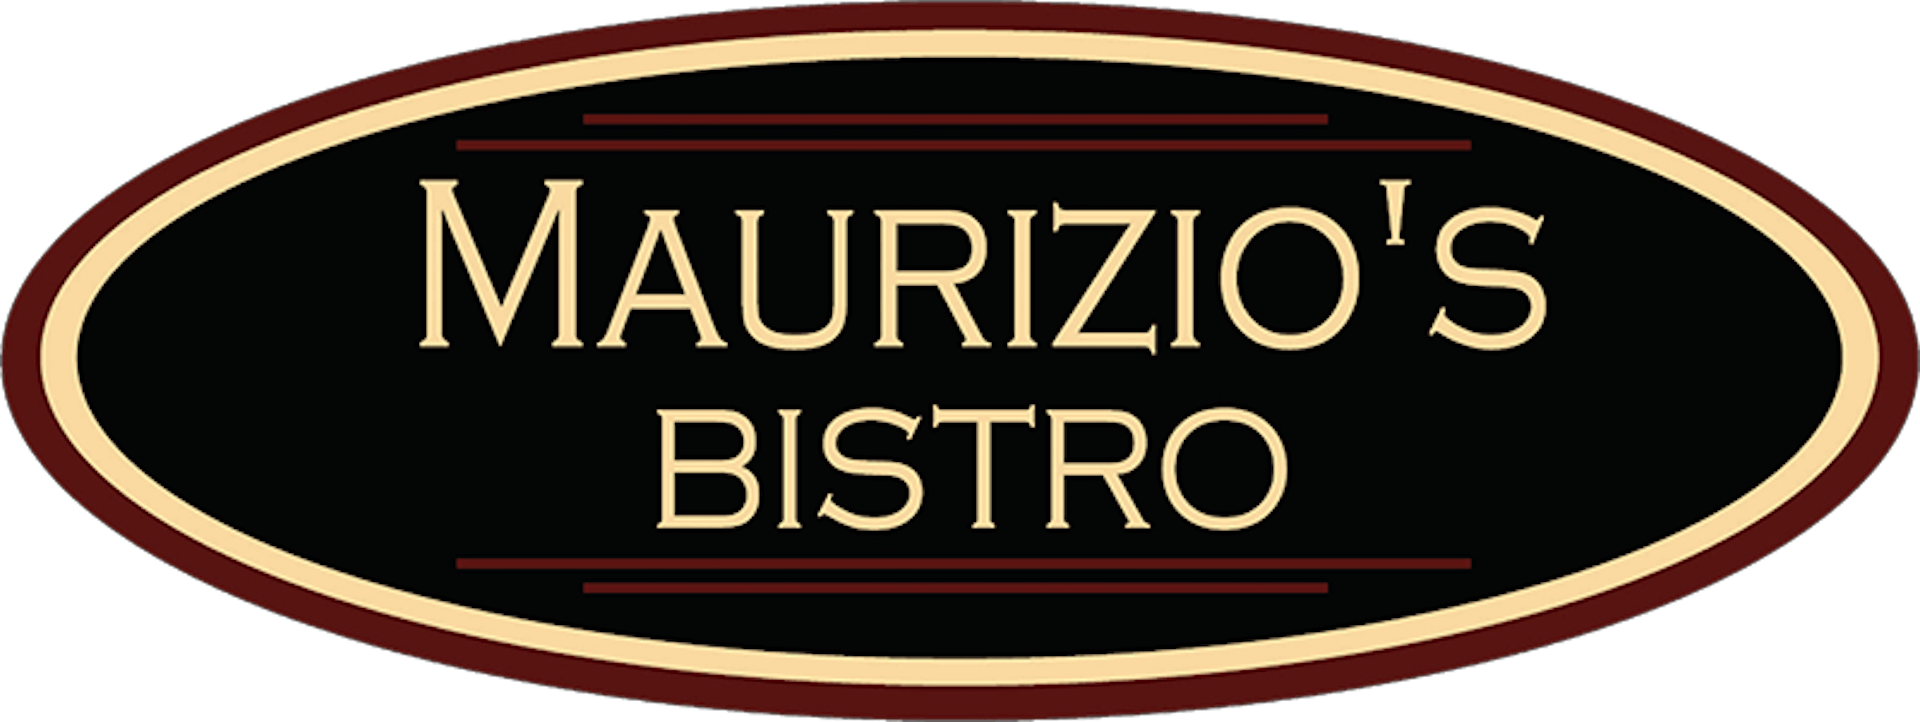 Maurizio's Bistro